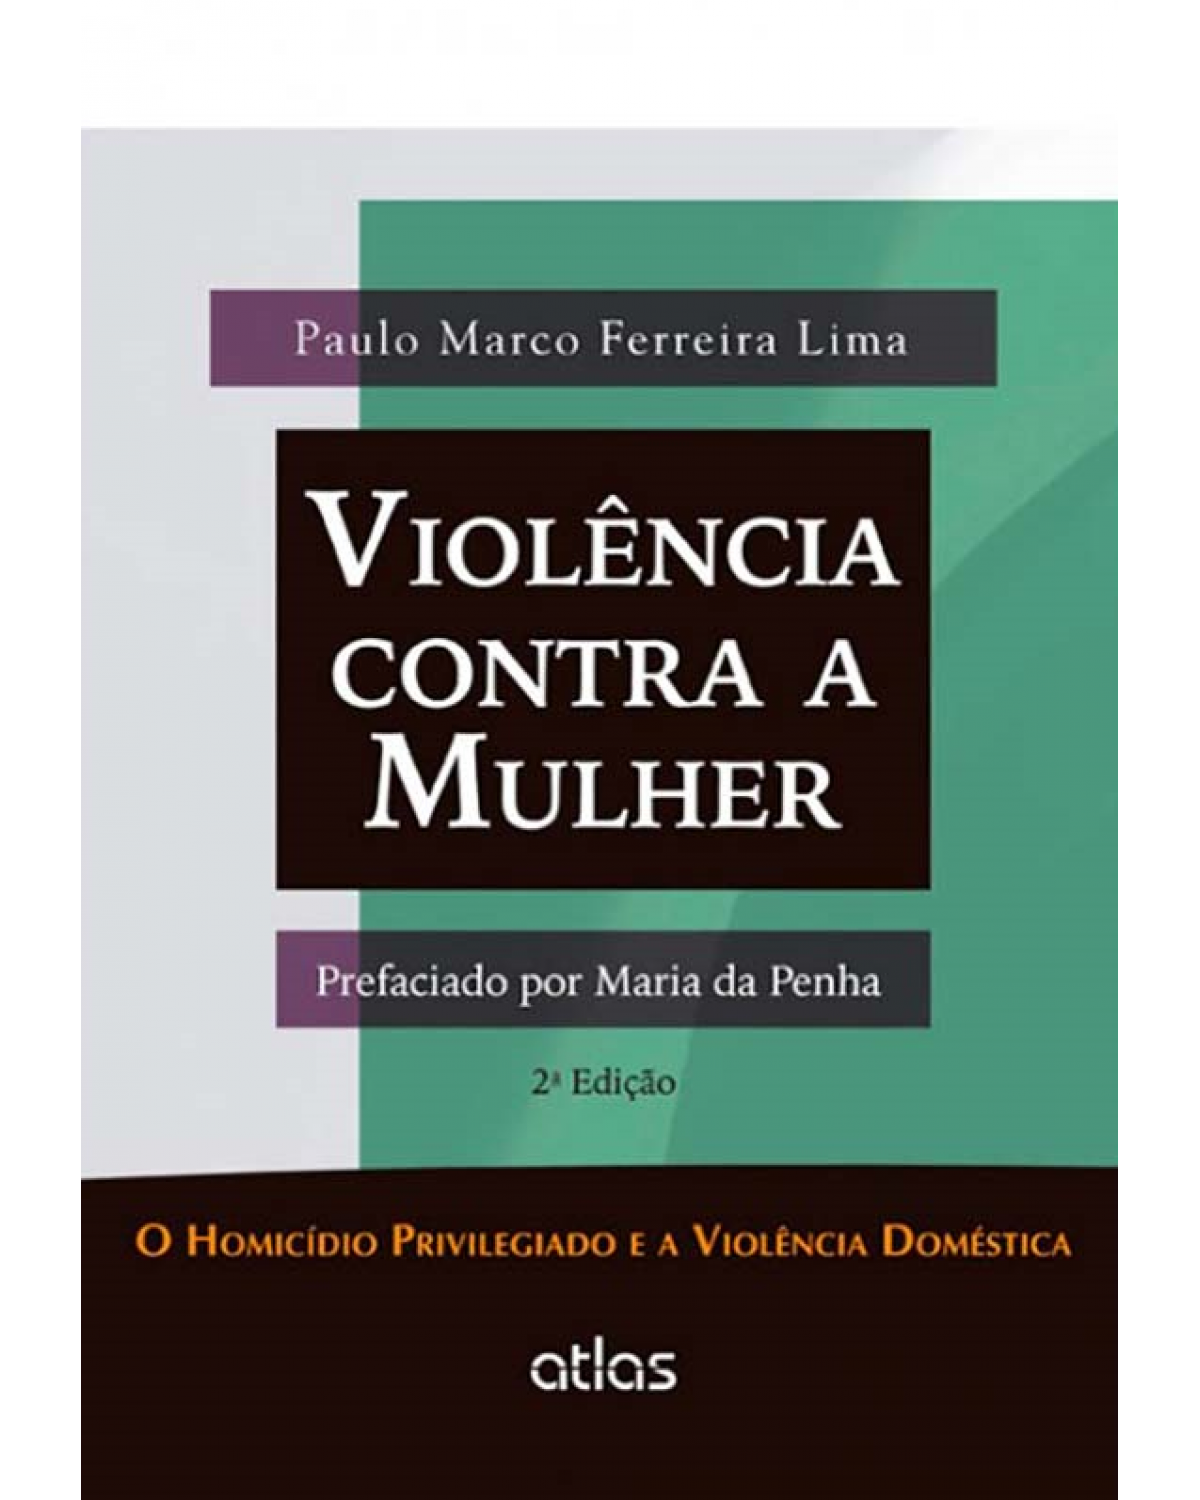 Violência contra a mulher: O homicídio privilegiado e a violência doméstica - 2ª Edição